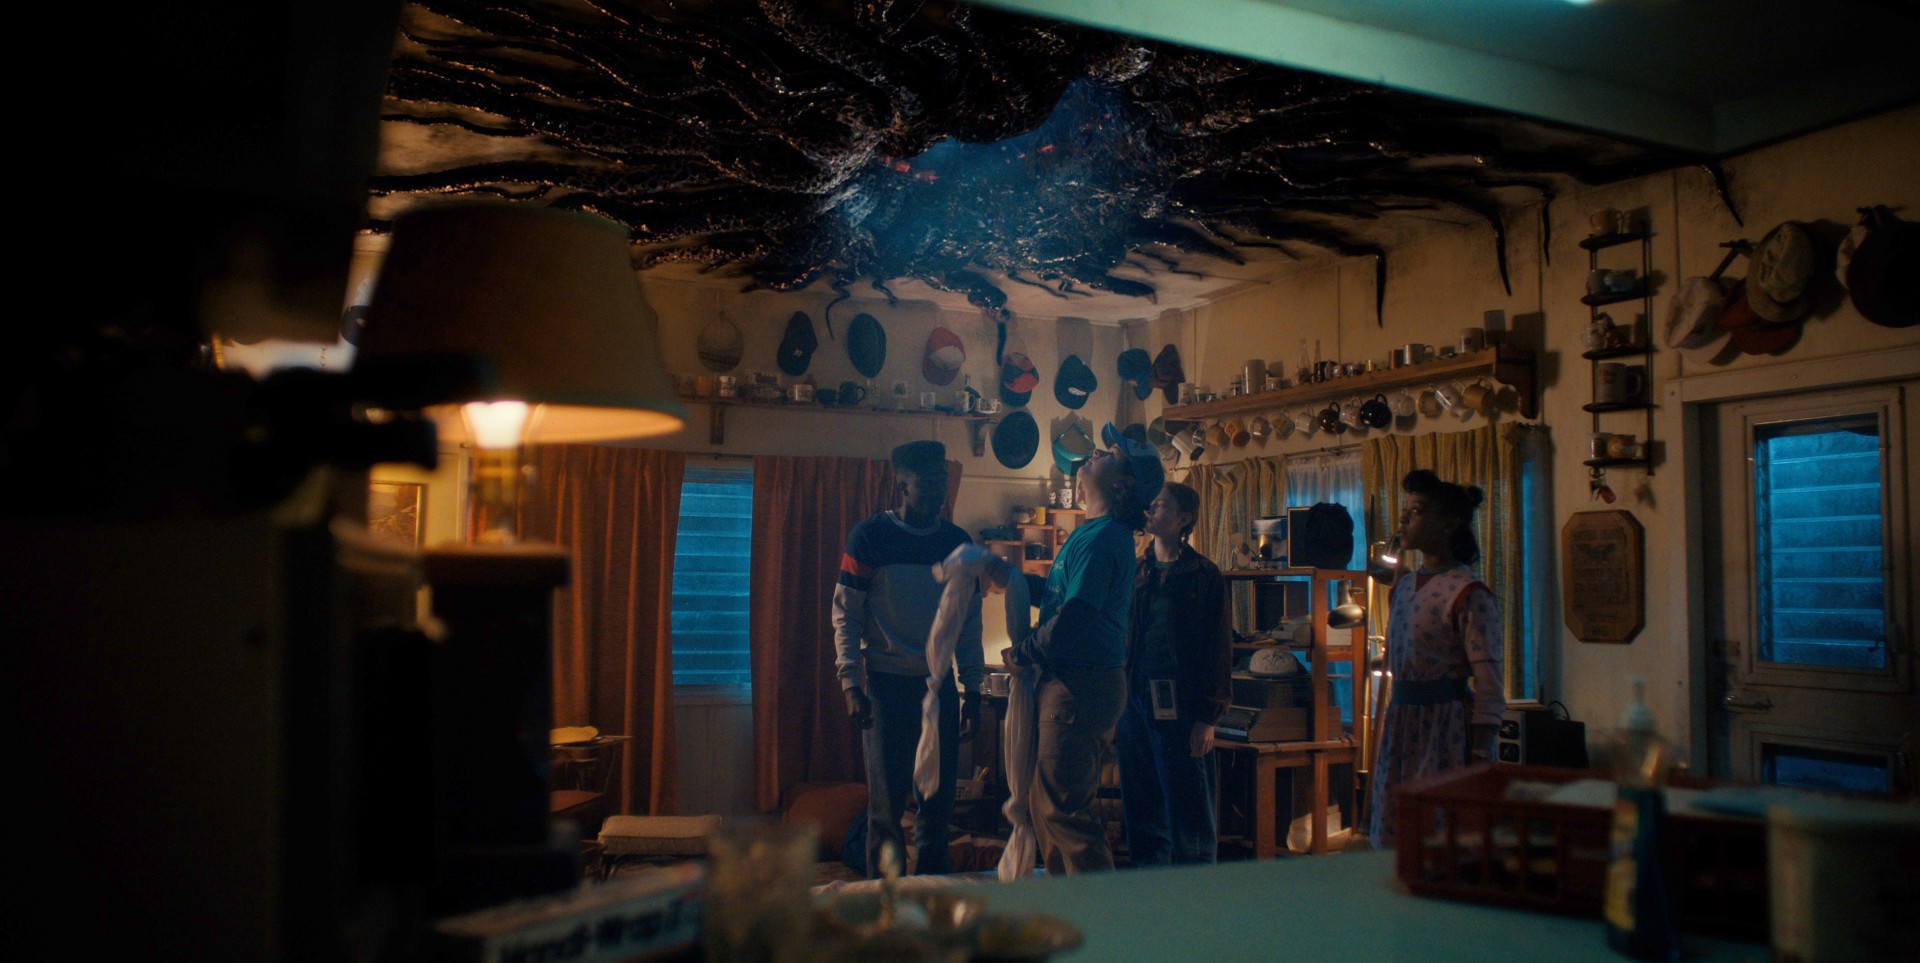 Os personagens de Stranger Things olham para um portal no teto de uma sala.